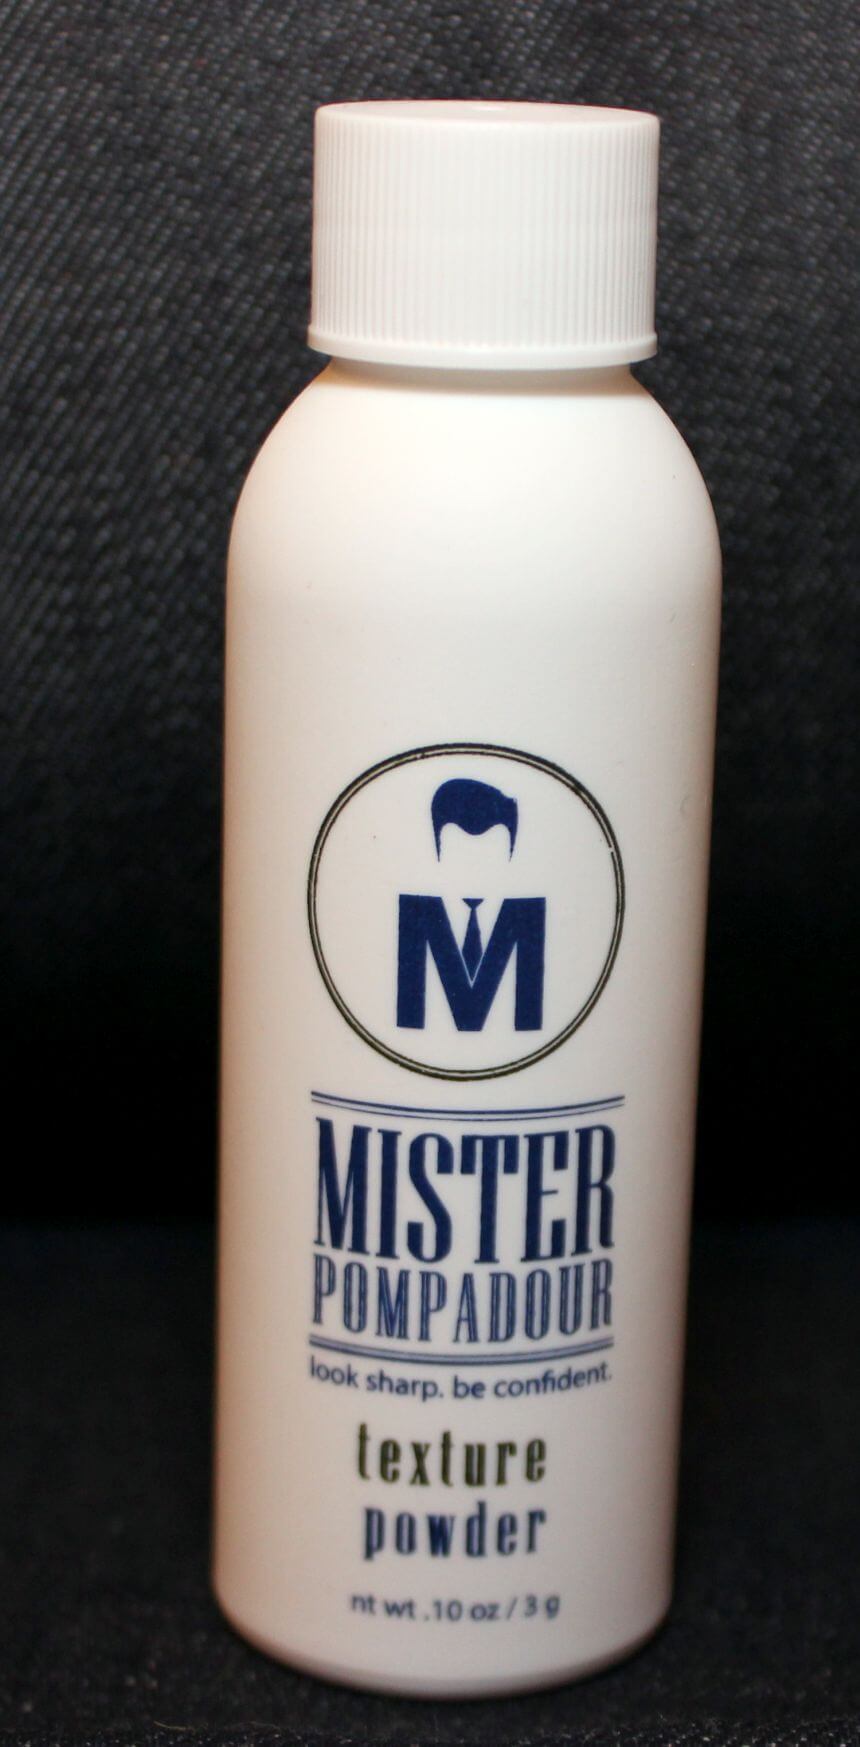 Mister Pompadour Moroccan Texture Paste For Mens Hair, 2 oz